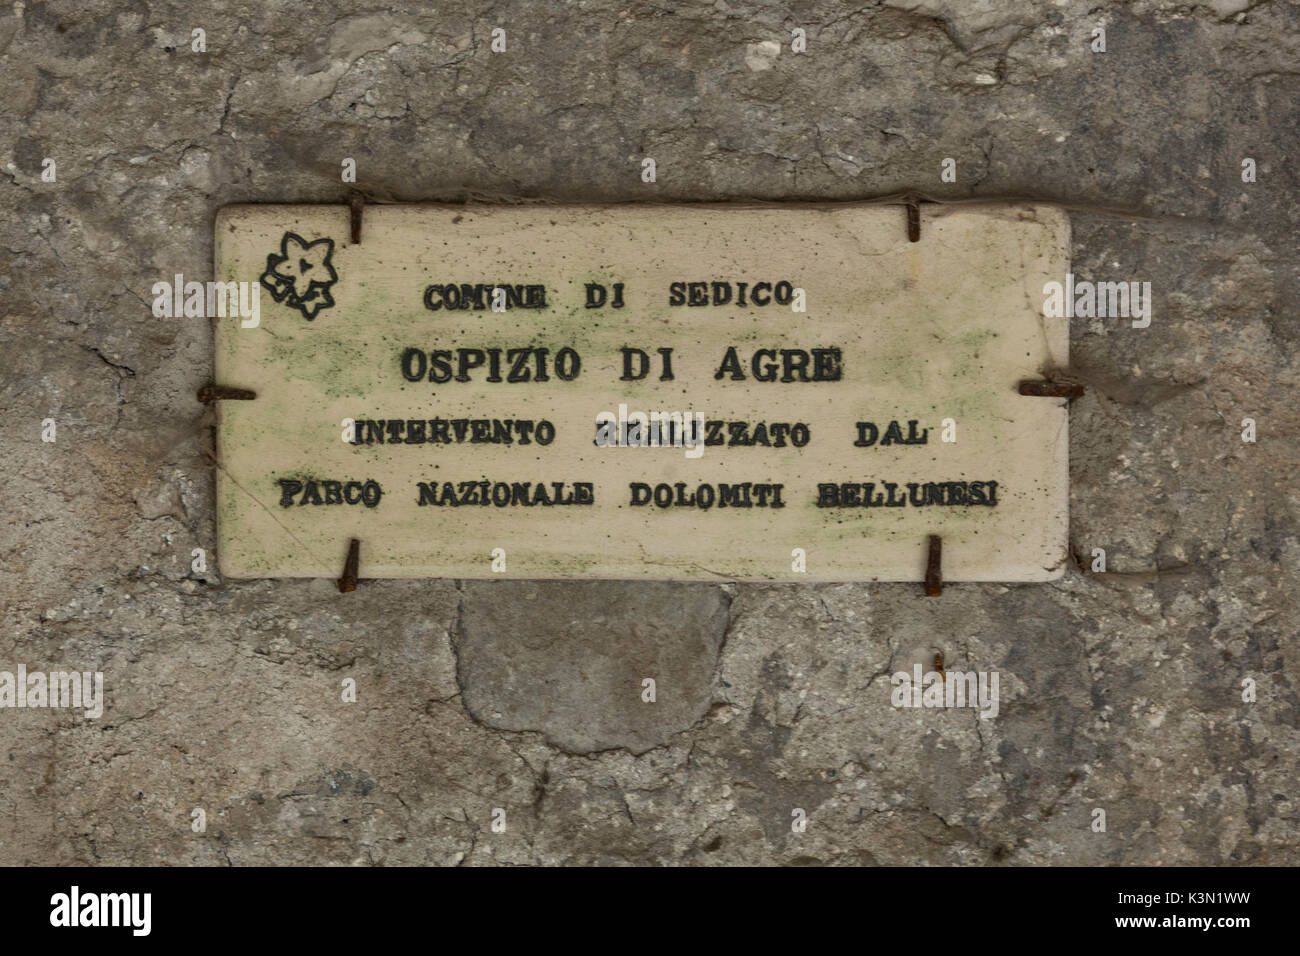 Hospice of Agre, marble plaque, Monti del Sole, Dolomiti Bellunesi National Park, Belluno, Veneto, Italy Stock Photo